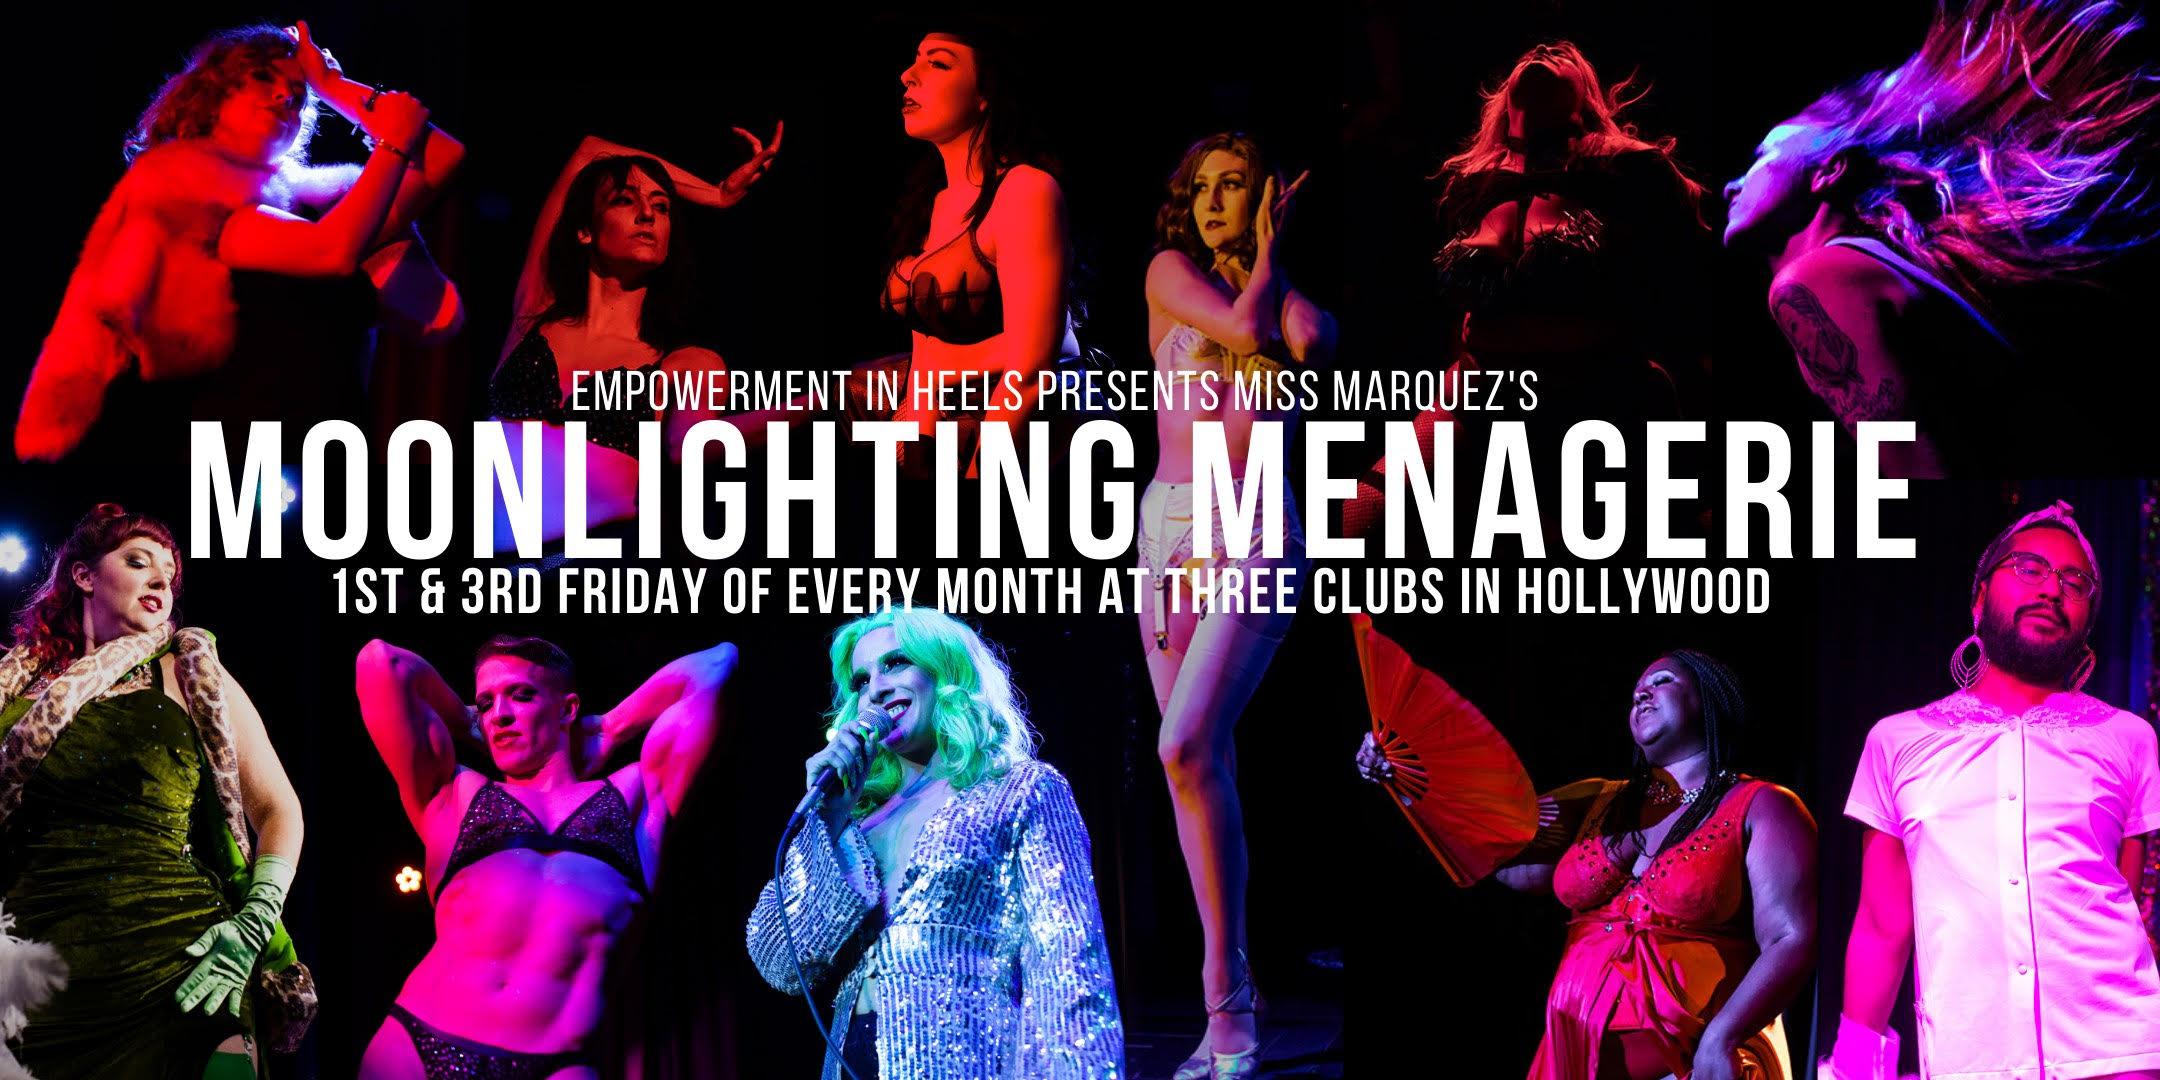 Empowerment in Heels presents: Miss Marquez Moonlighting Menagerie